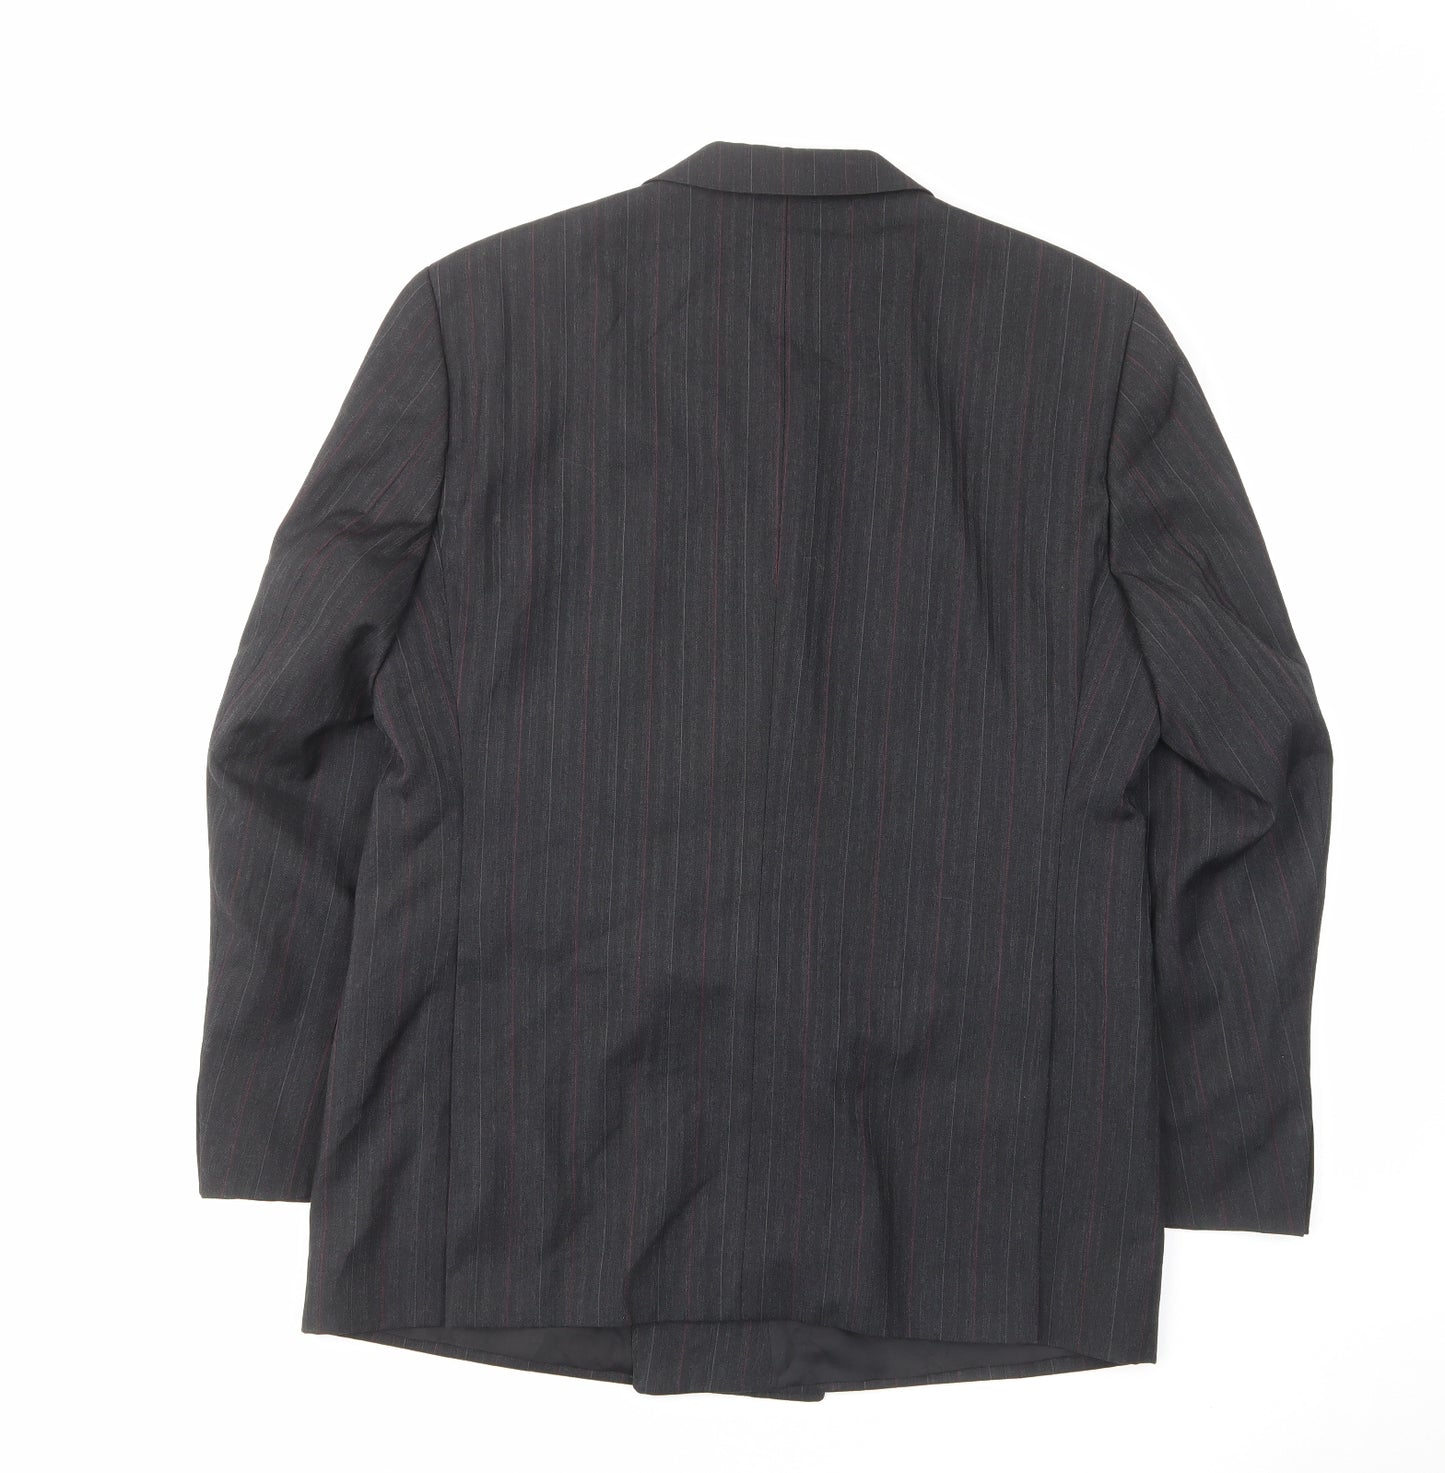 Skads Mens Grey Striped Polyester Jacket Suit Jacket Size 40 Regular